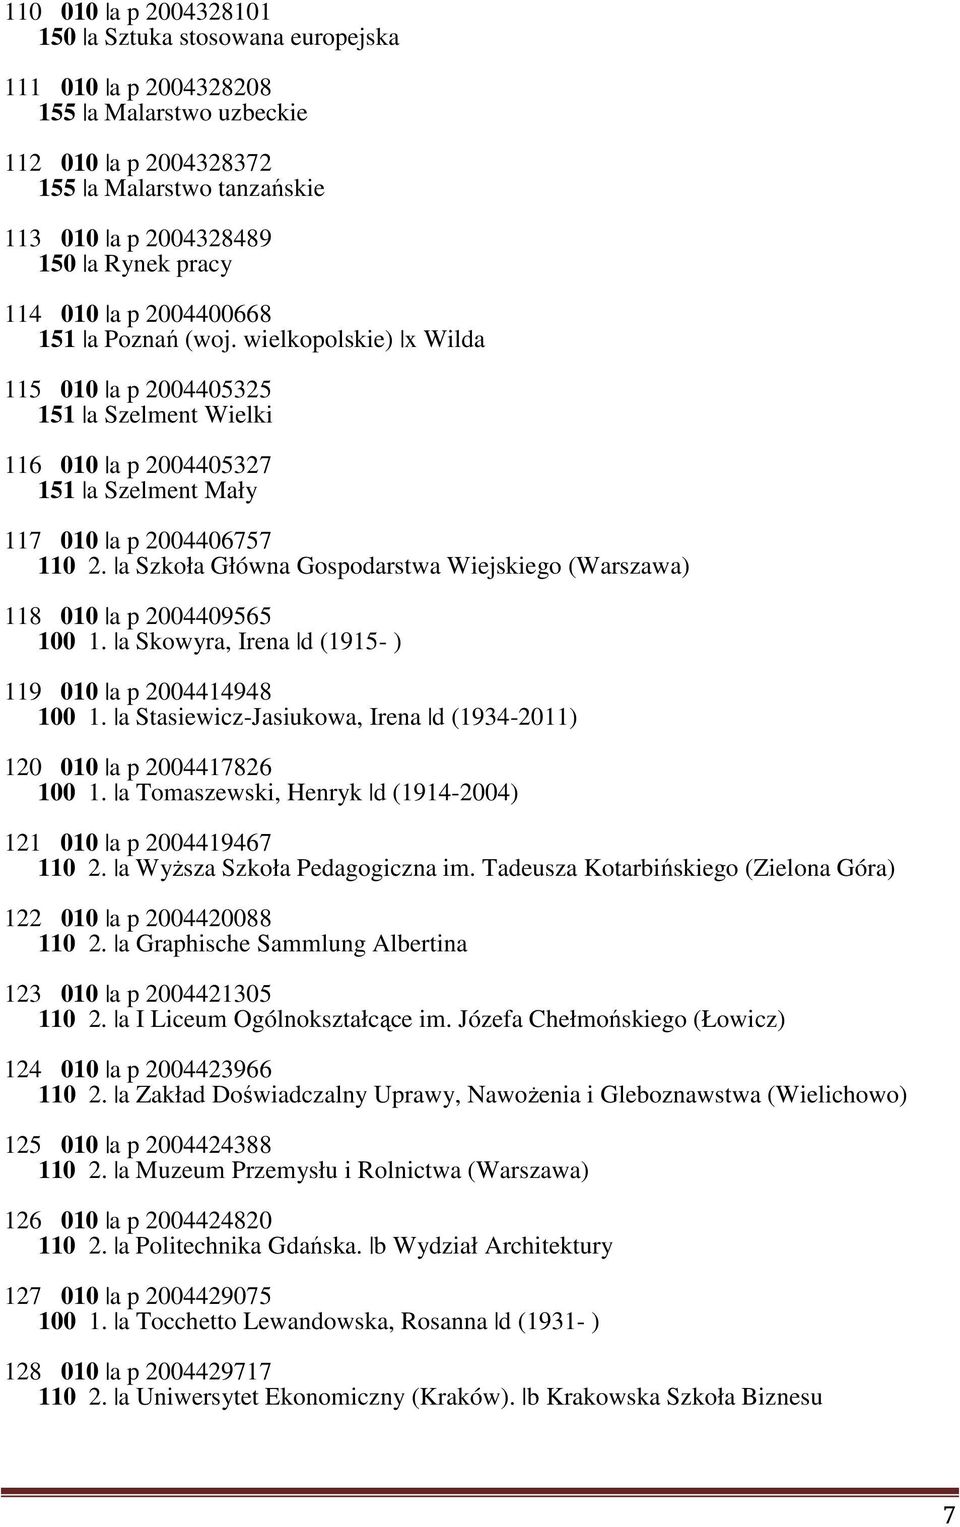 a Szkoła Główna Gospodarstwa Wiejskiego (Warszawa) 118 010 a p 2004409565 100 1. a Skowyra, Irena d (1915- ) 119 010 a p 2004414948 100 1.